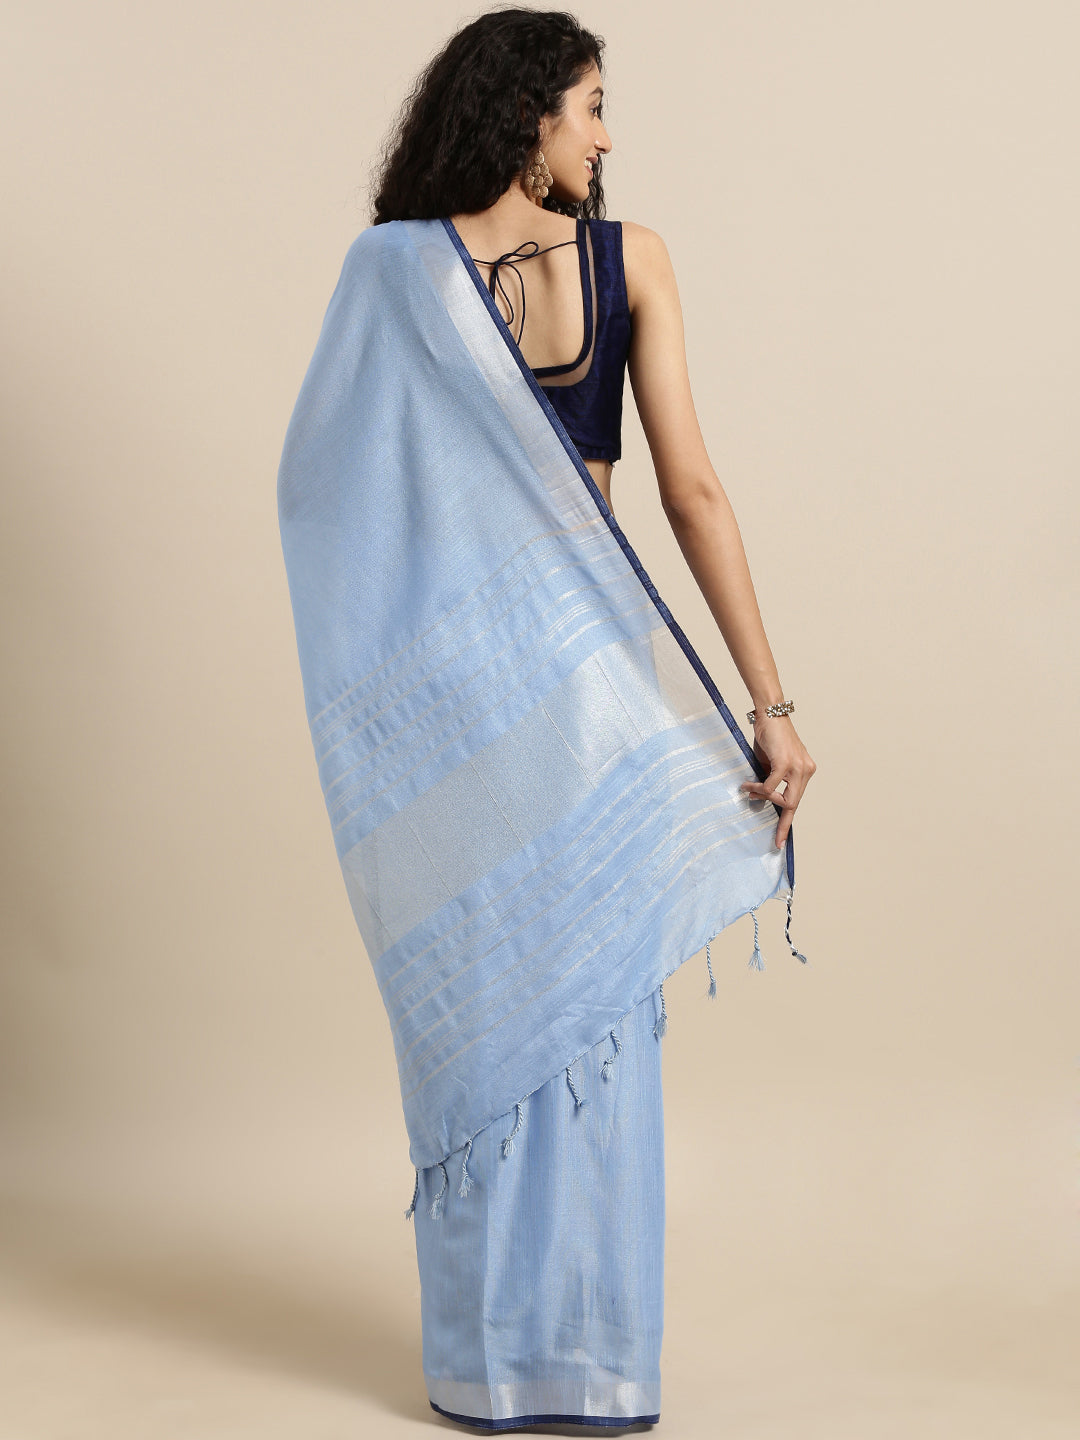 Blue Colour Stylish Solid Linen Saree With Zari Border